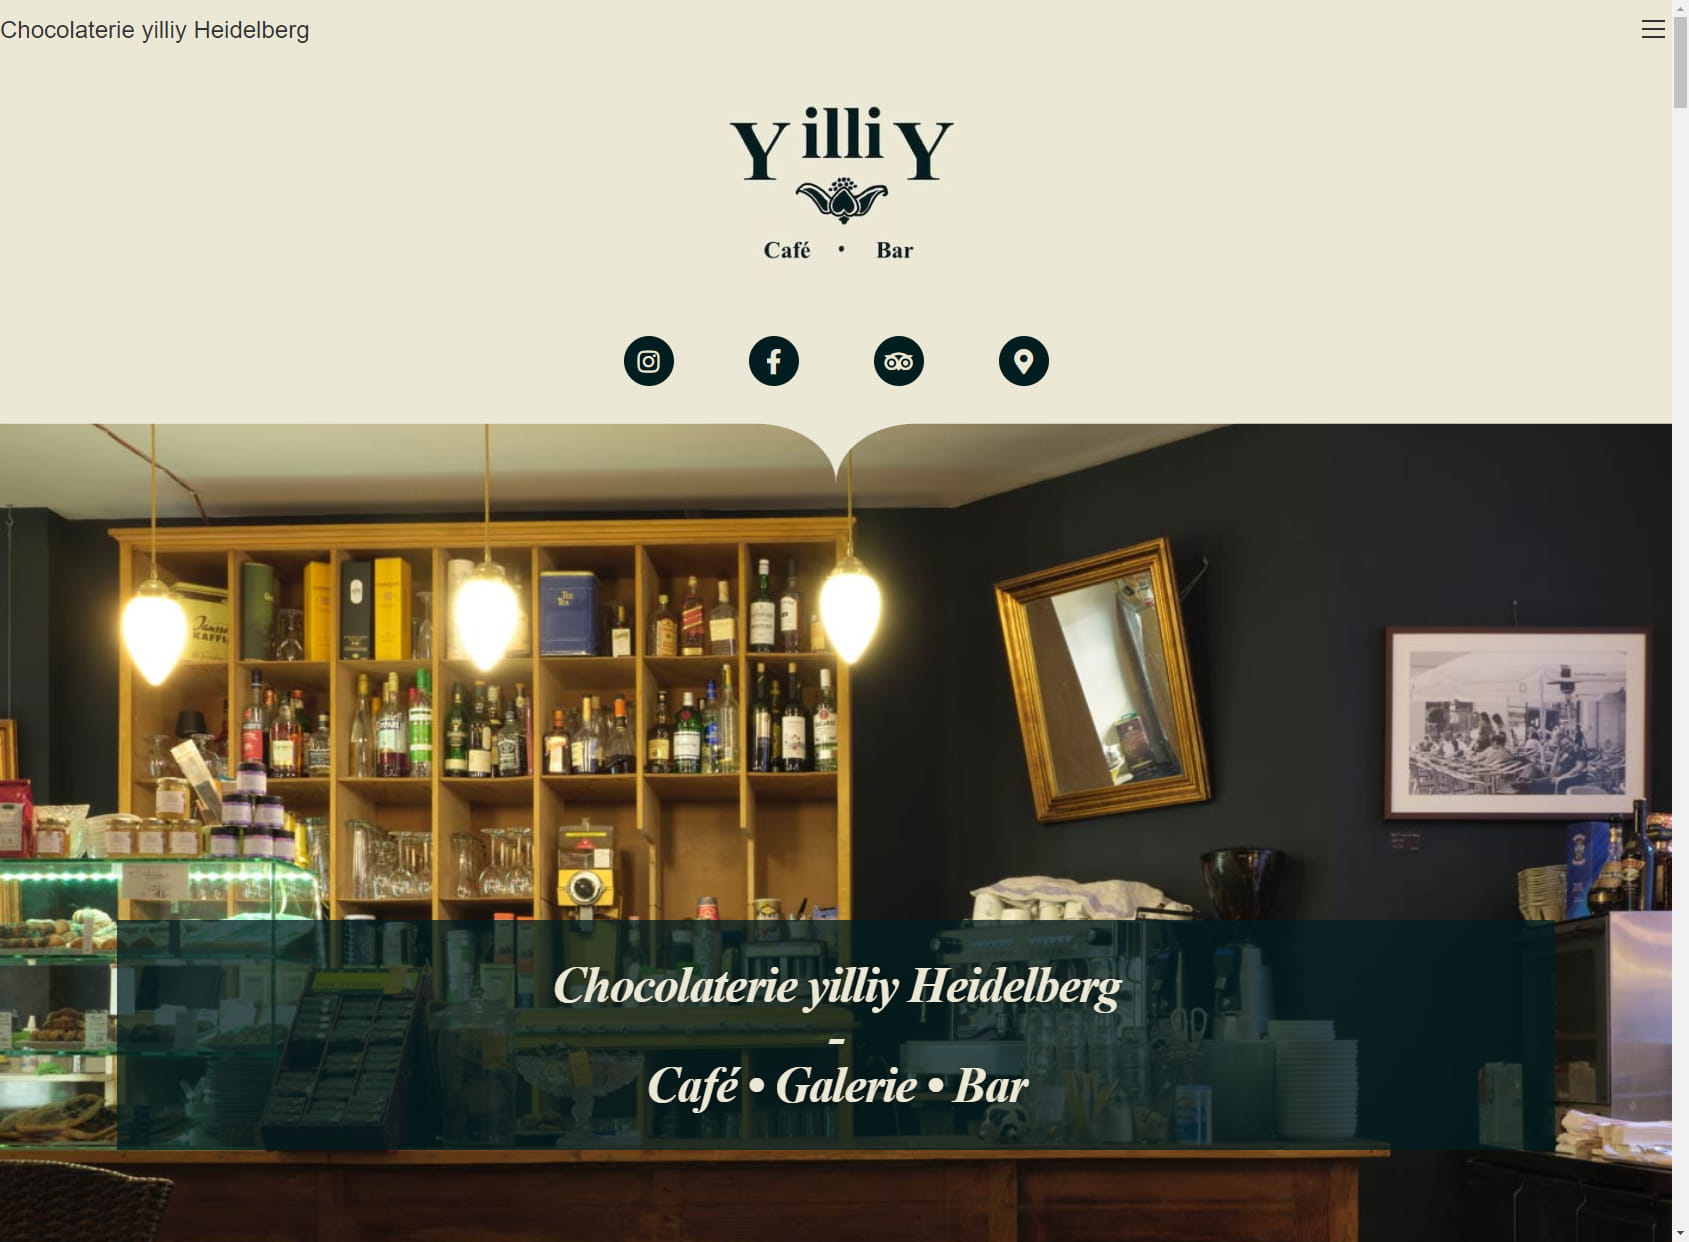 yilliy - Chocolaterie, Café und Galerie